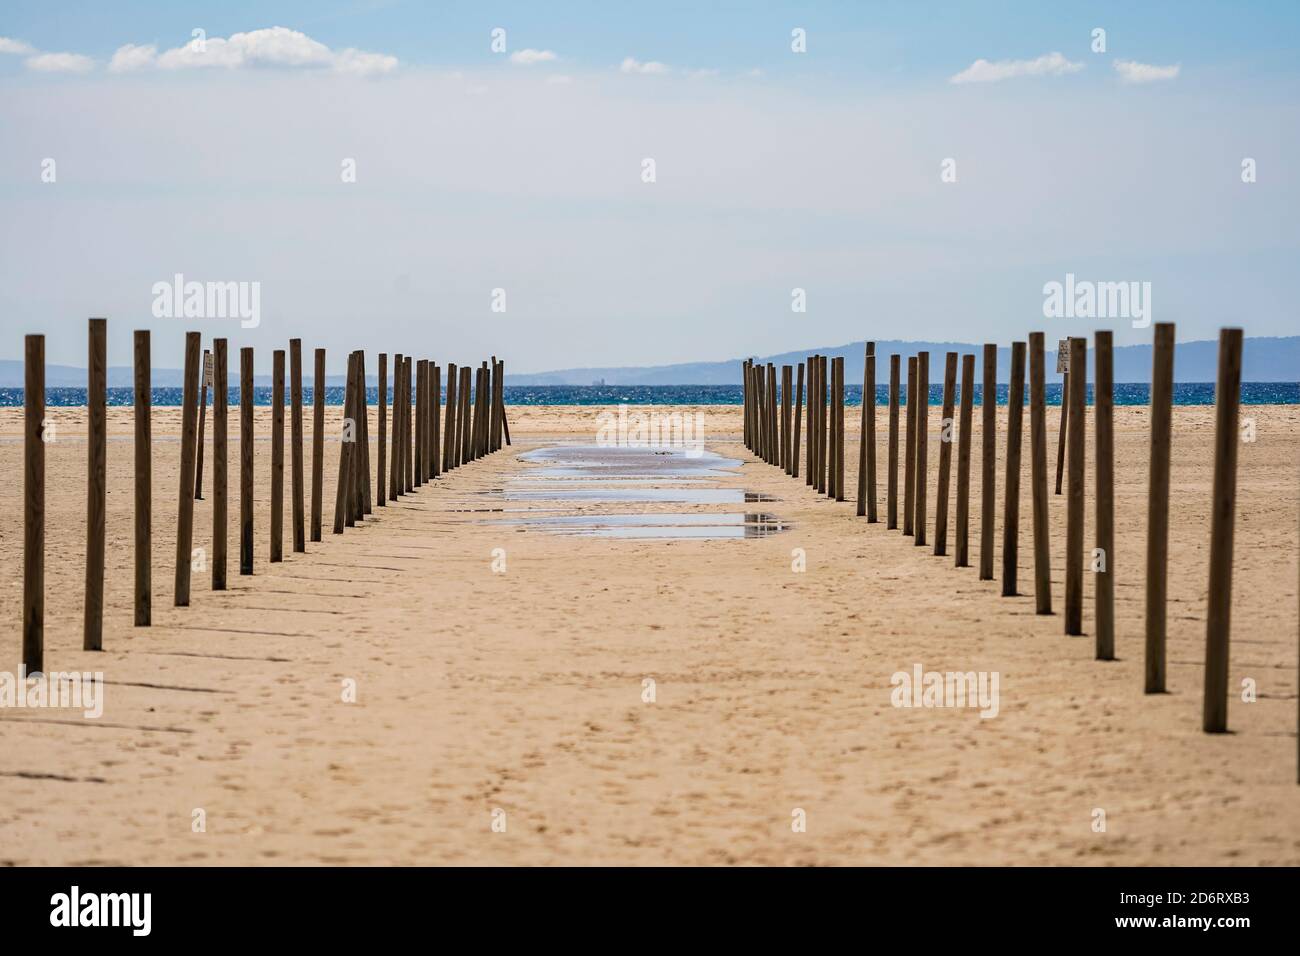 Playa de los lances, plage près de Tarifa avec la formation de lagons temporaires, Cadix, Costa de la Luz, Andalousie, Espagne. Banque D'Images